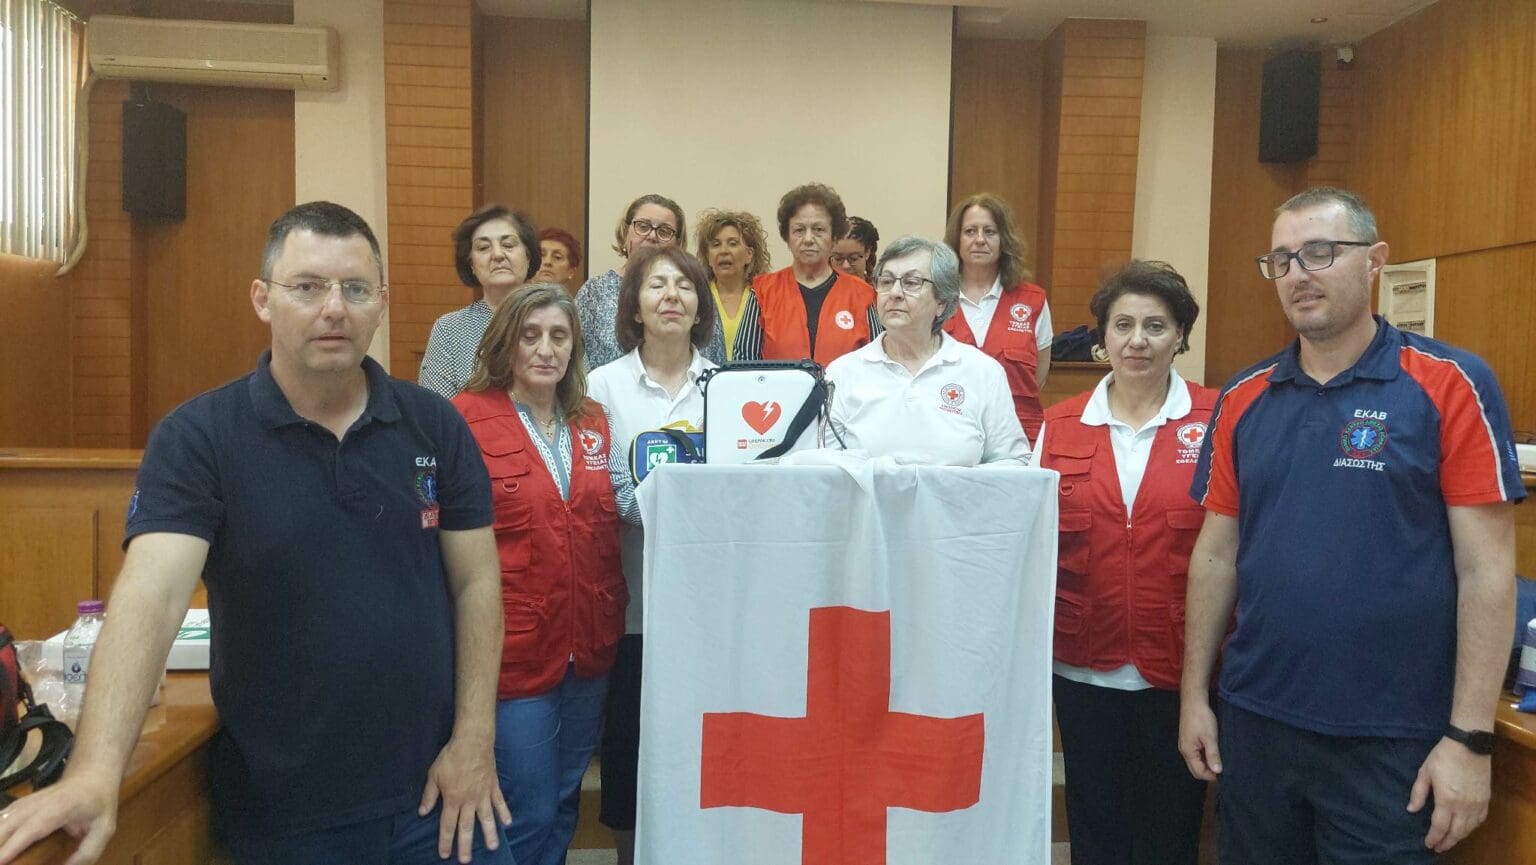 Την 10η Ιουνίου ημέρα ιδρύσεως του Ελληνικού Ερυθρού Σταυρού και τα 146 χρόνια προσφοράς του, τίμησε το Π.Τ. του ΕΕΣ Πτολεμαΐδας .